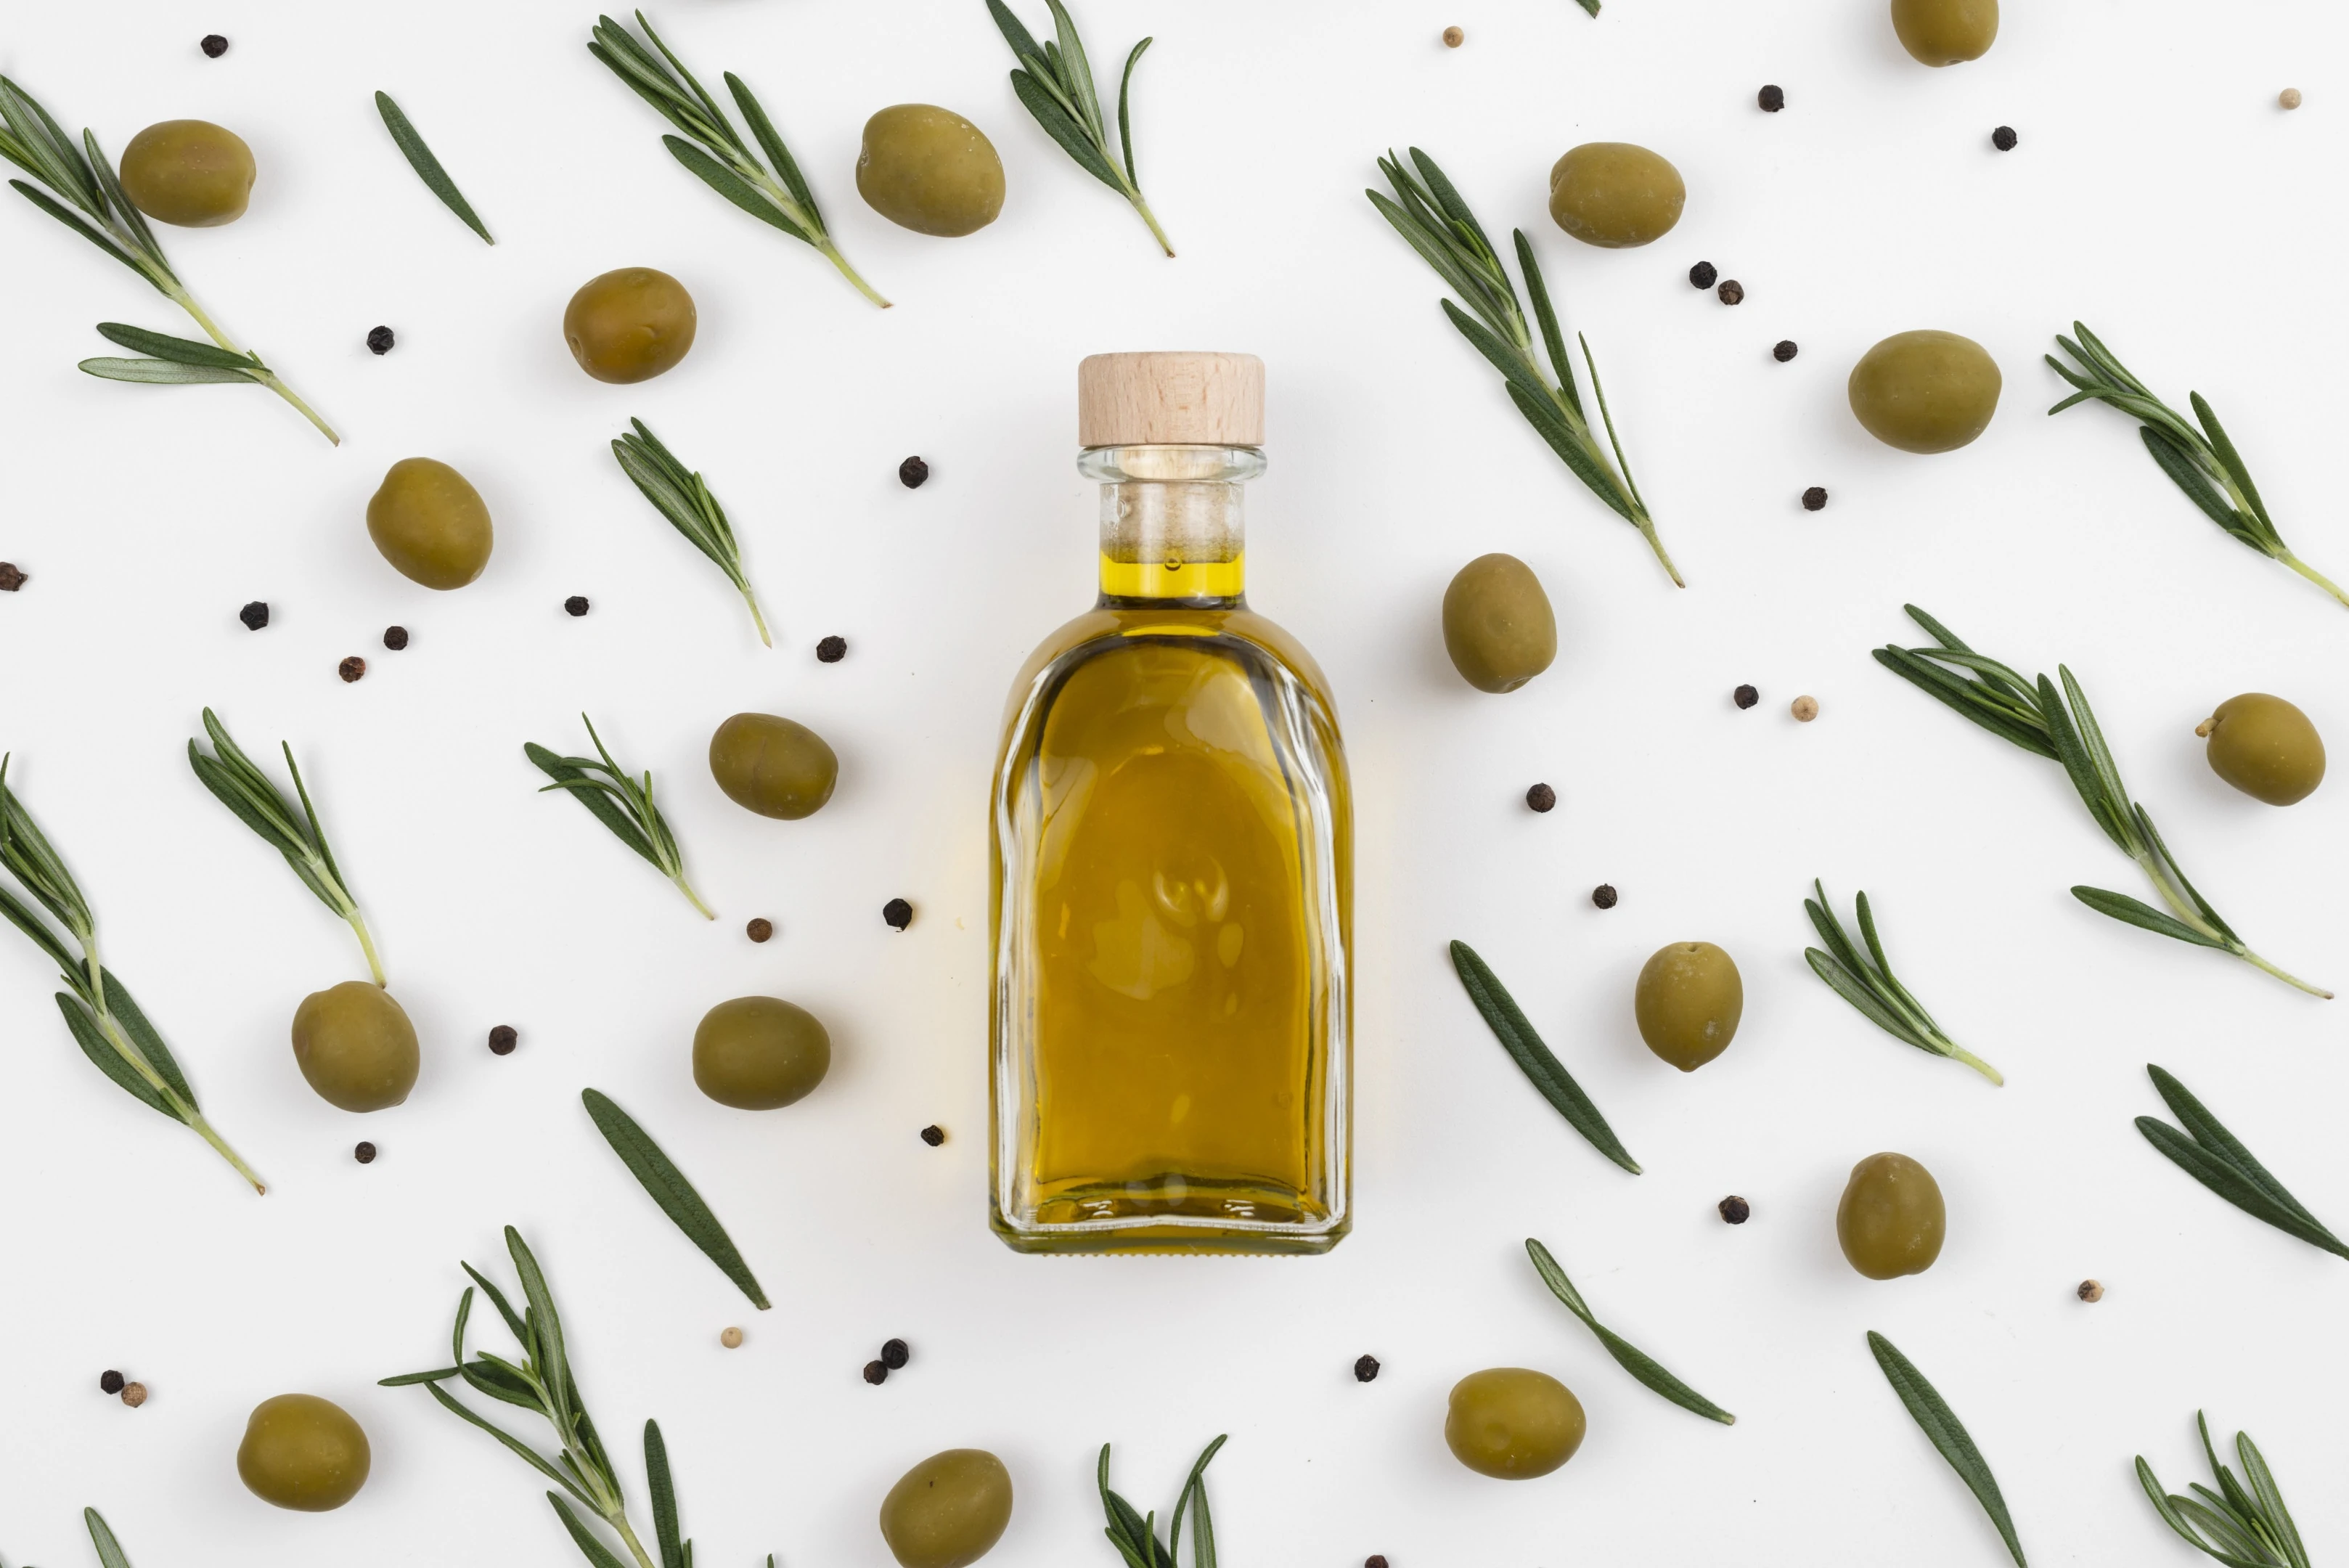 Olives, olive leaves and olive oil bottle on white background